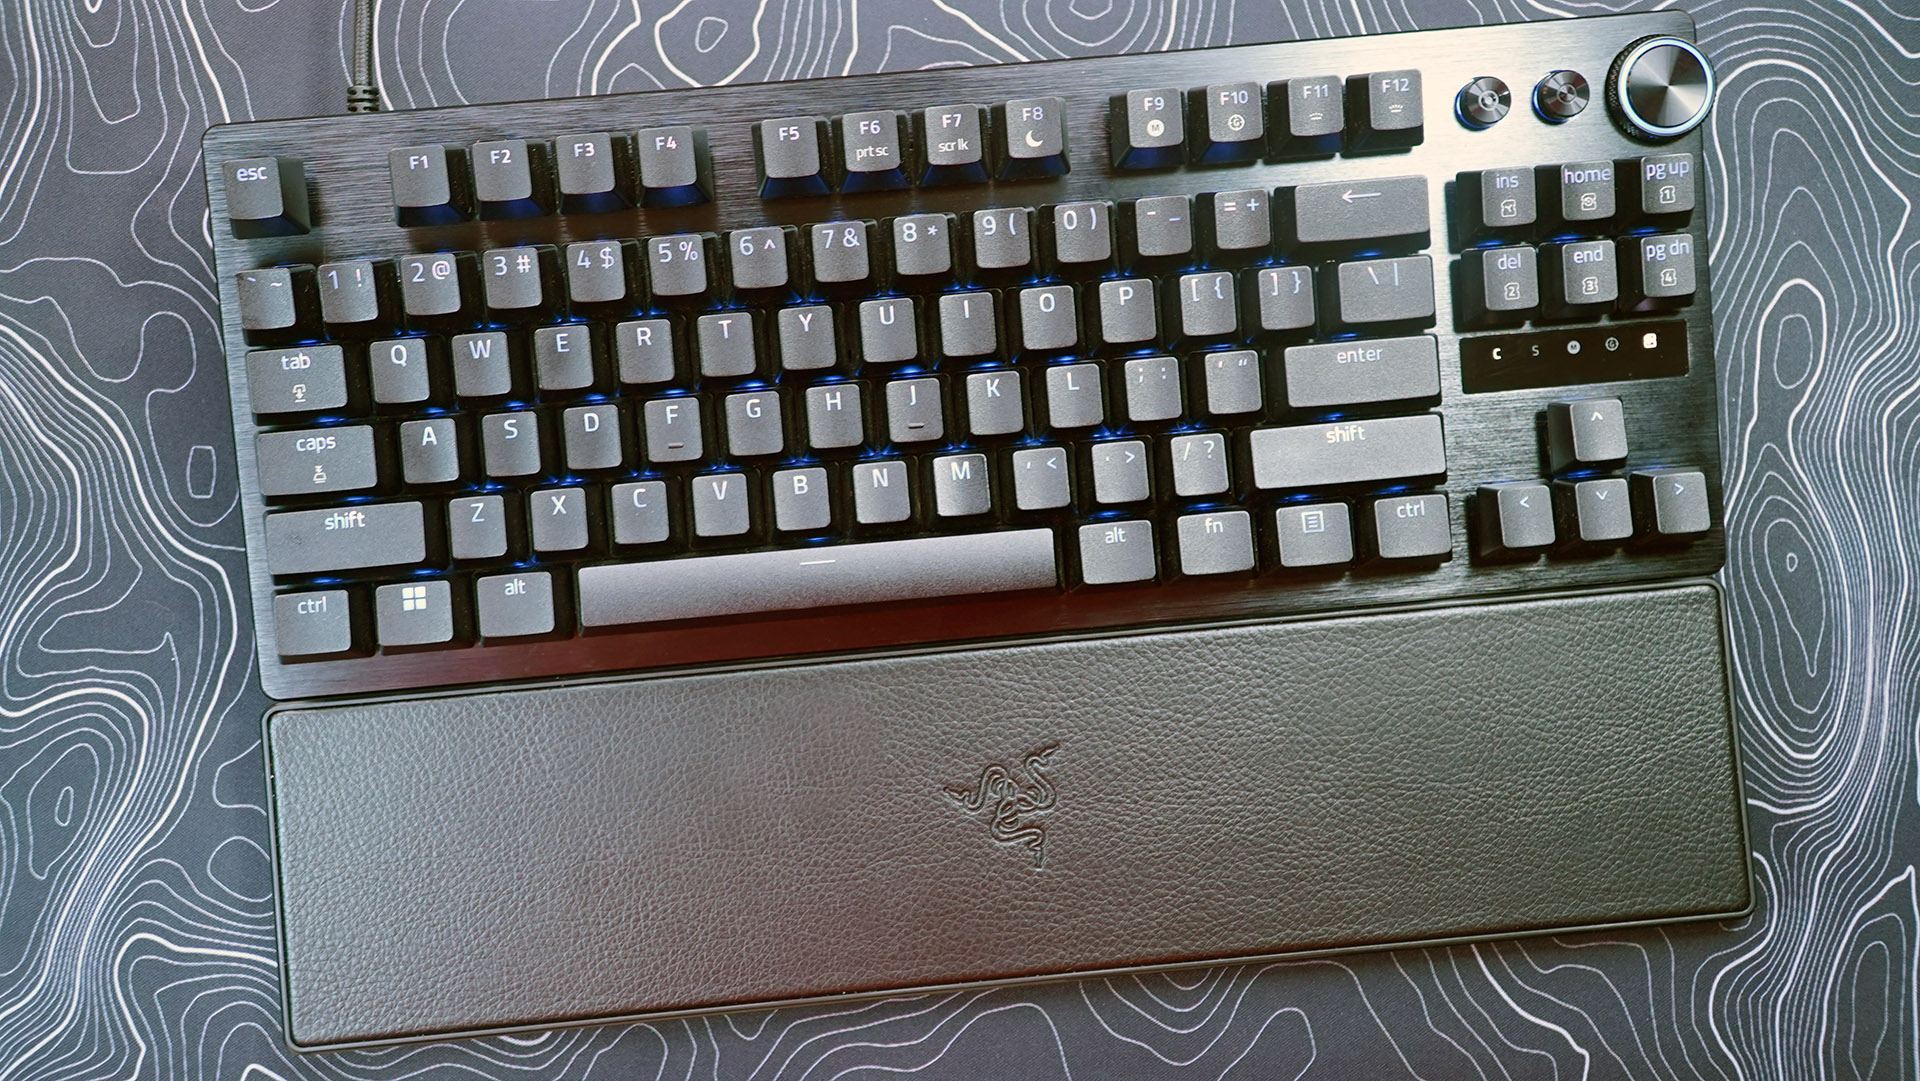 Razer Huntsman V3 Pro keyboard - Best analog gaming keyboard